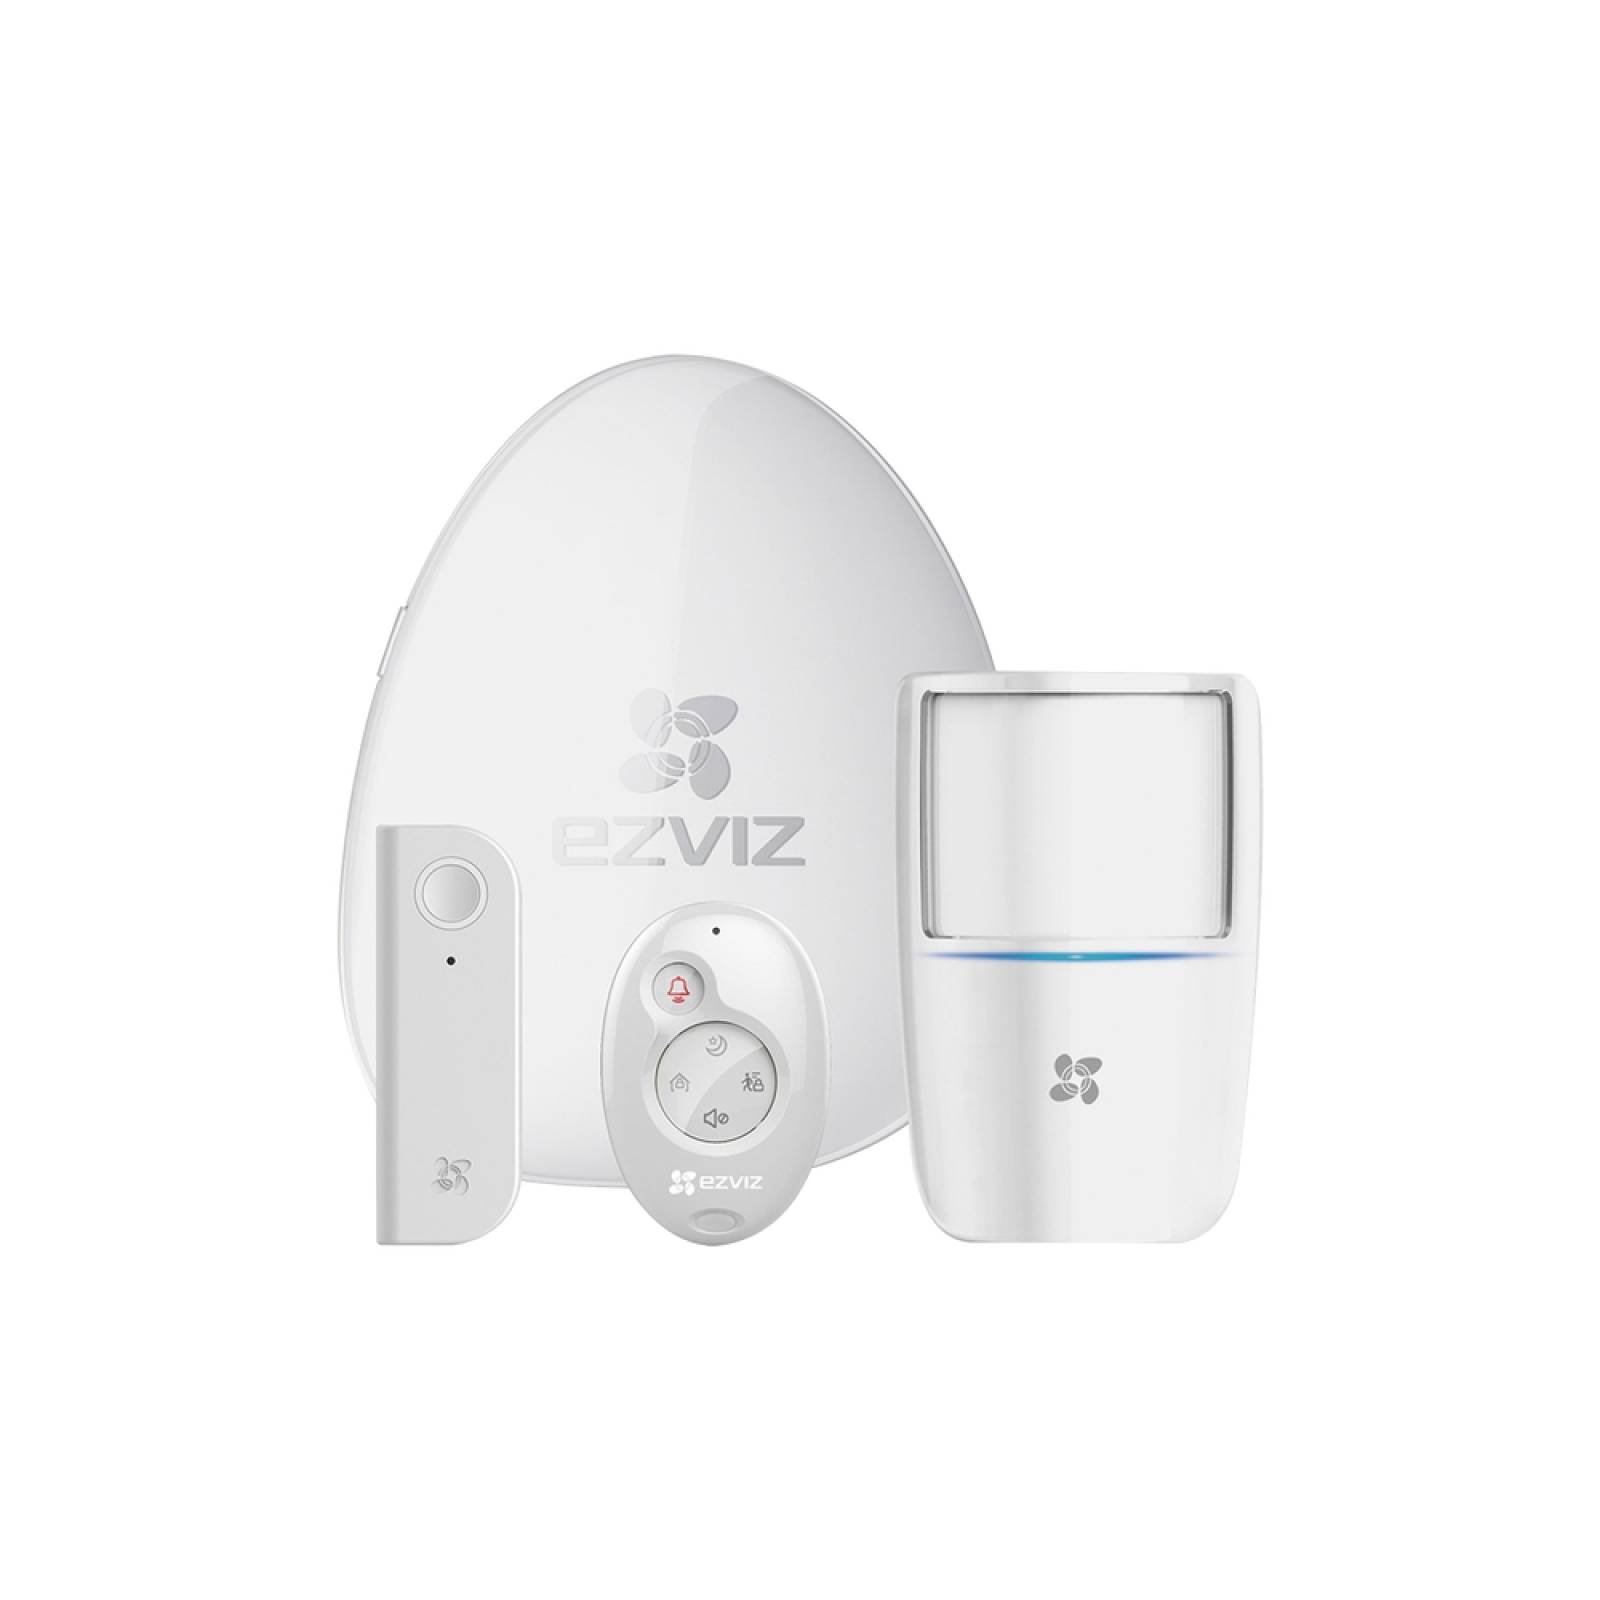 Kit de Alarma Inalambrico / Incluye: 1 Hub, 1 Sensor PIR, 1 Contacto de Movimiento y 1 Control Remoto / Monitoreo por aplicación móvil EZVIZ